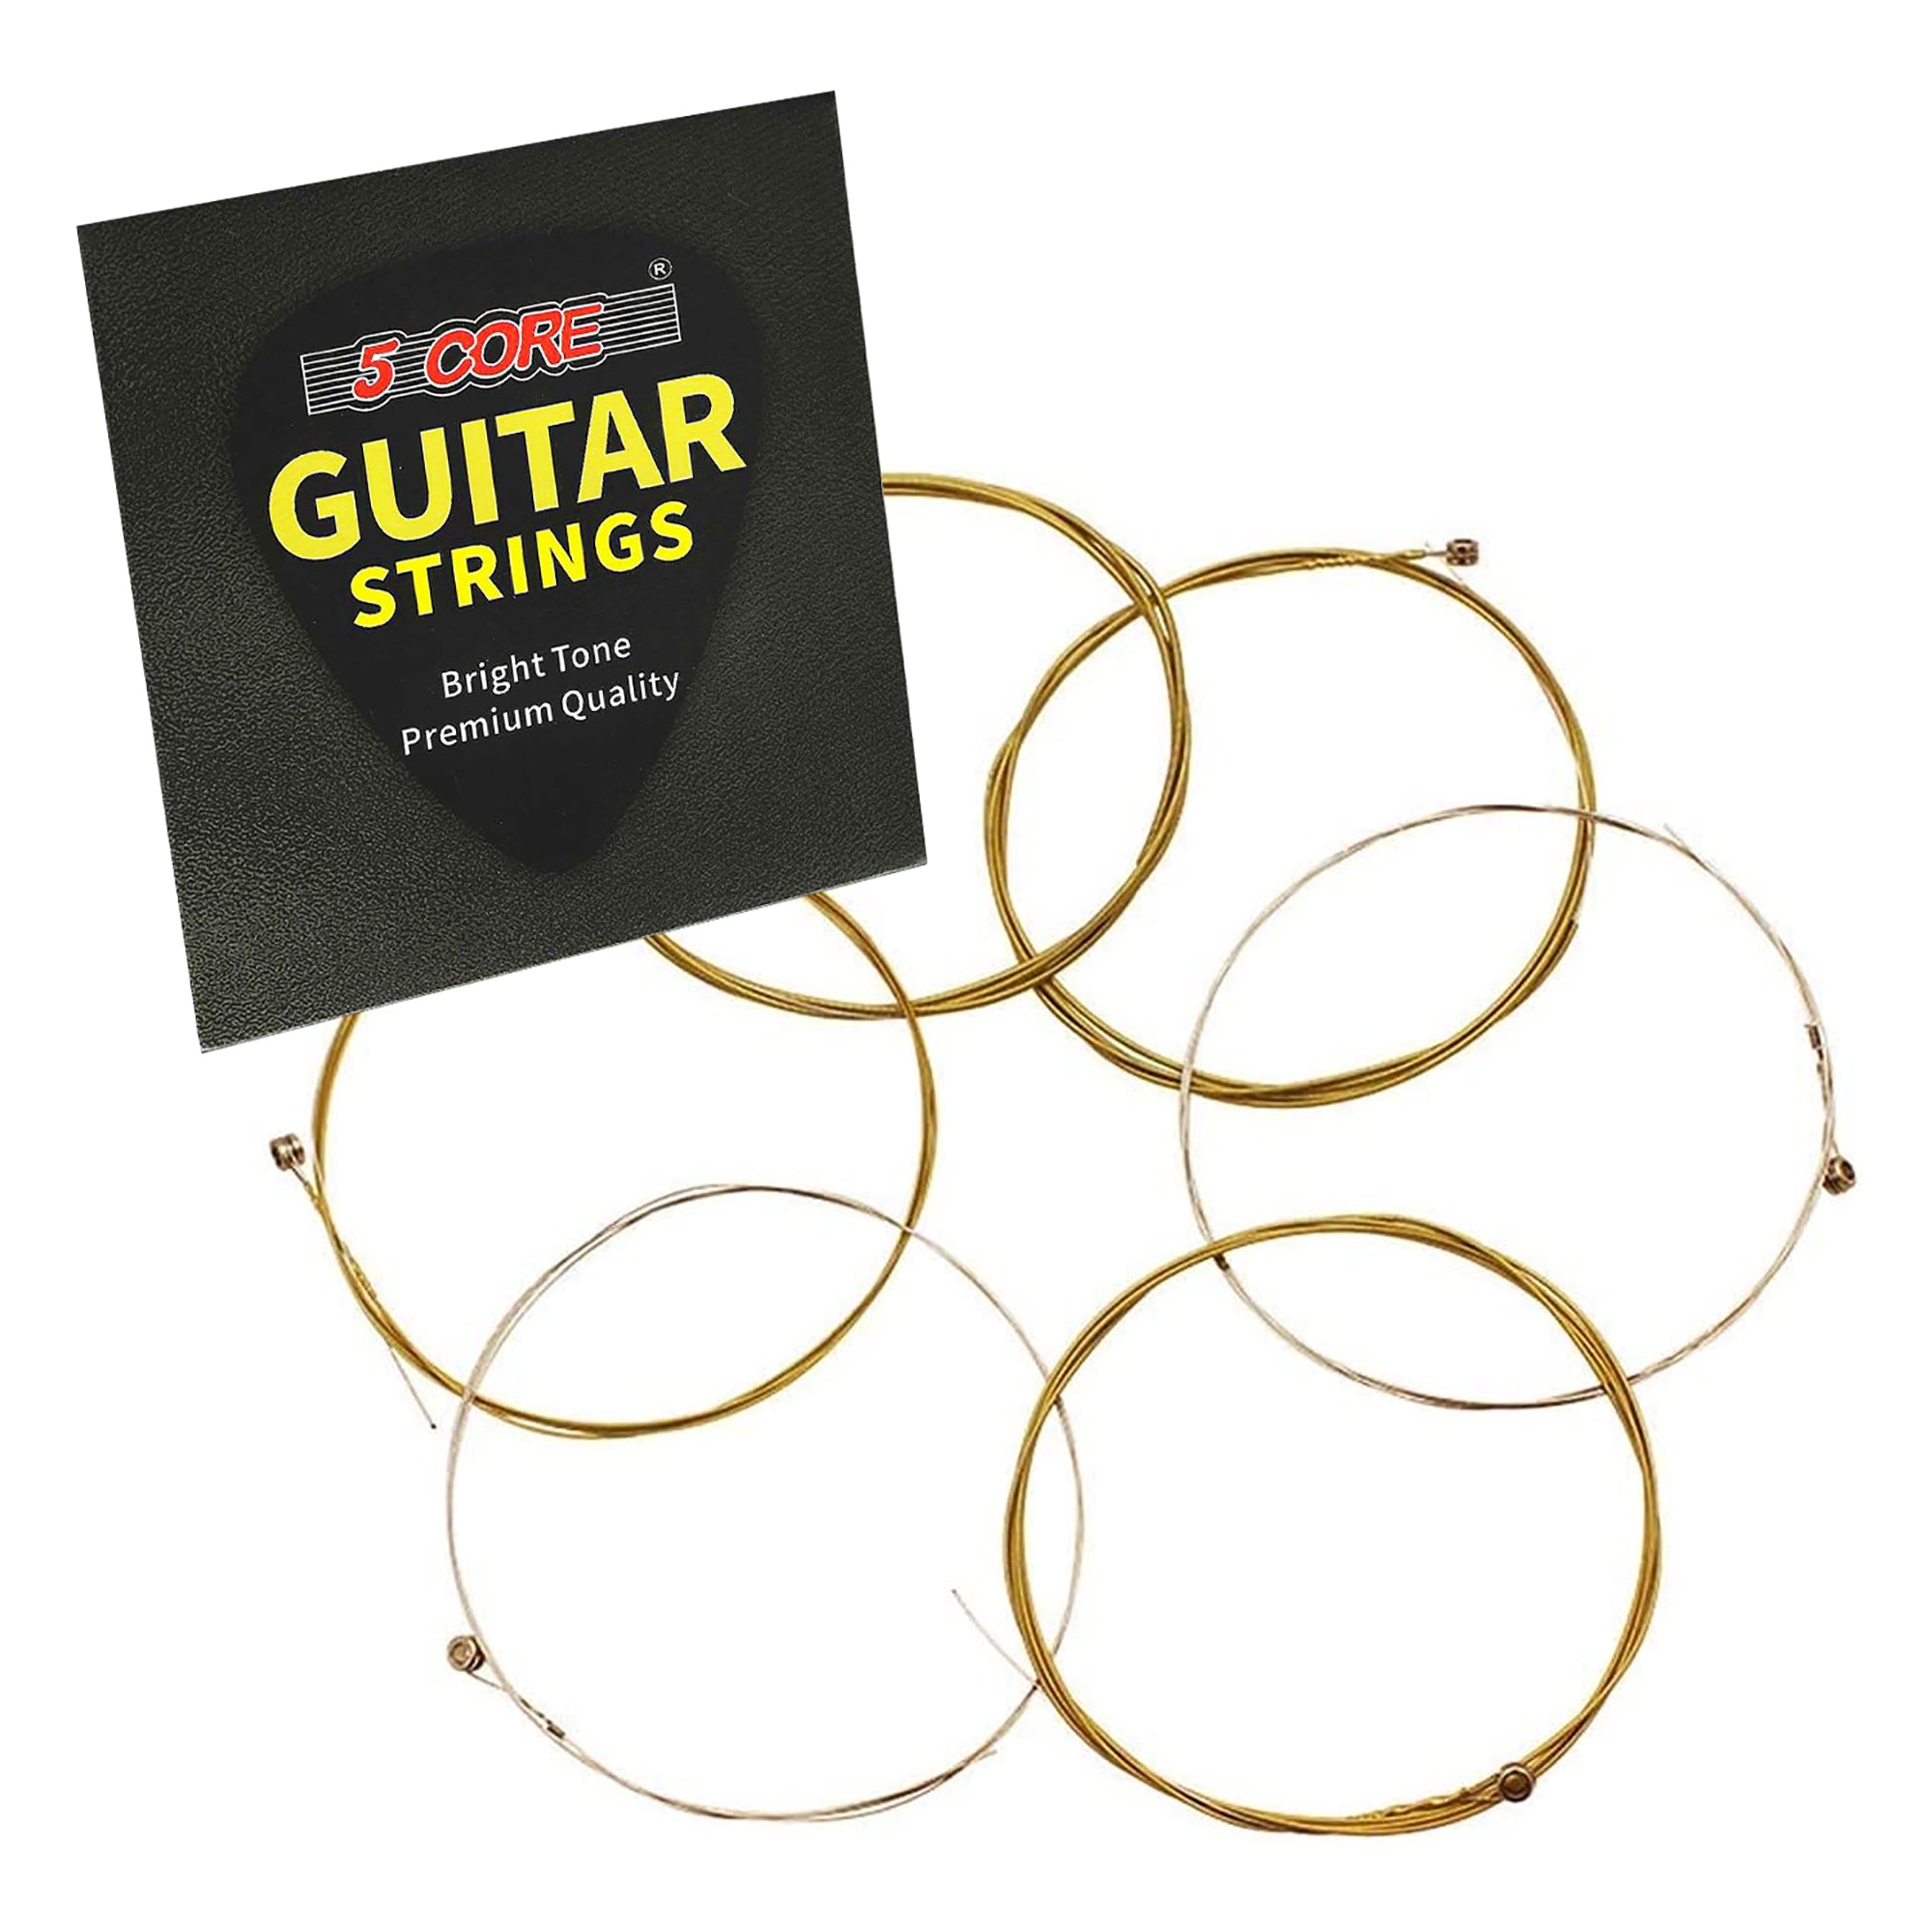 5 Core Guitar Strings 6 Pieces in 1 Set Phosphor Bronze Acoustic Guitar String Round Wound Guitar String Gauge is .010-.048 - GS AC BZ